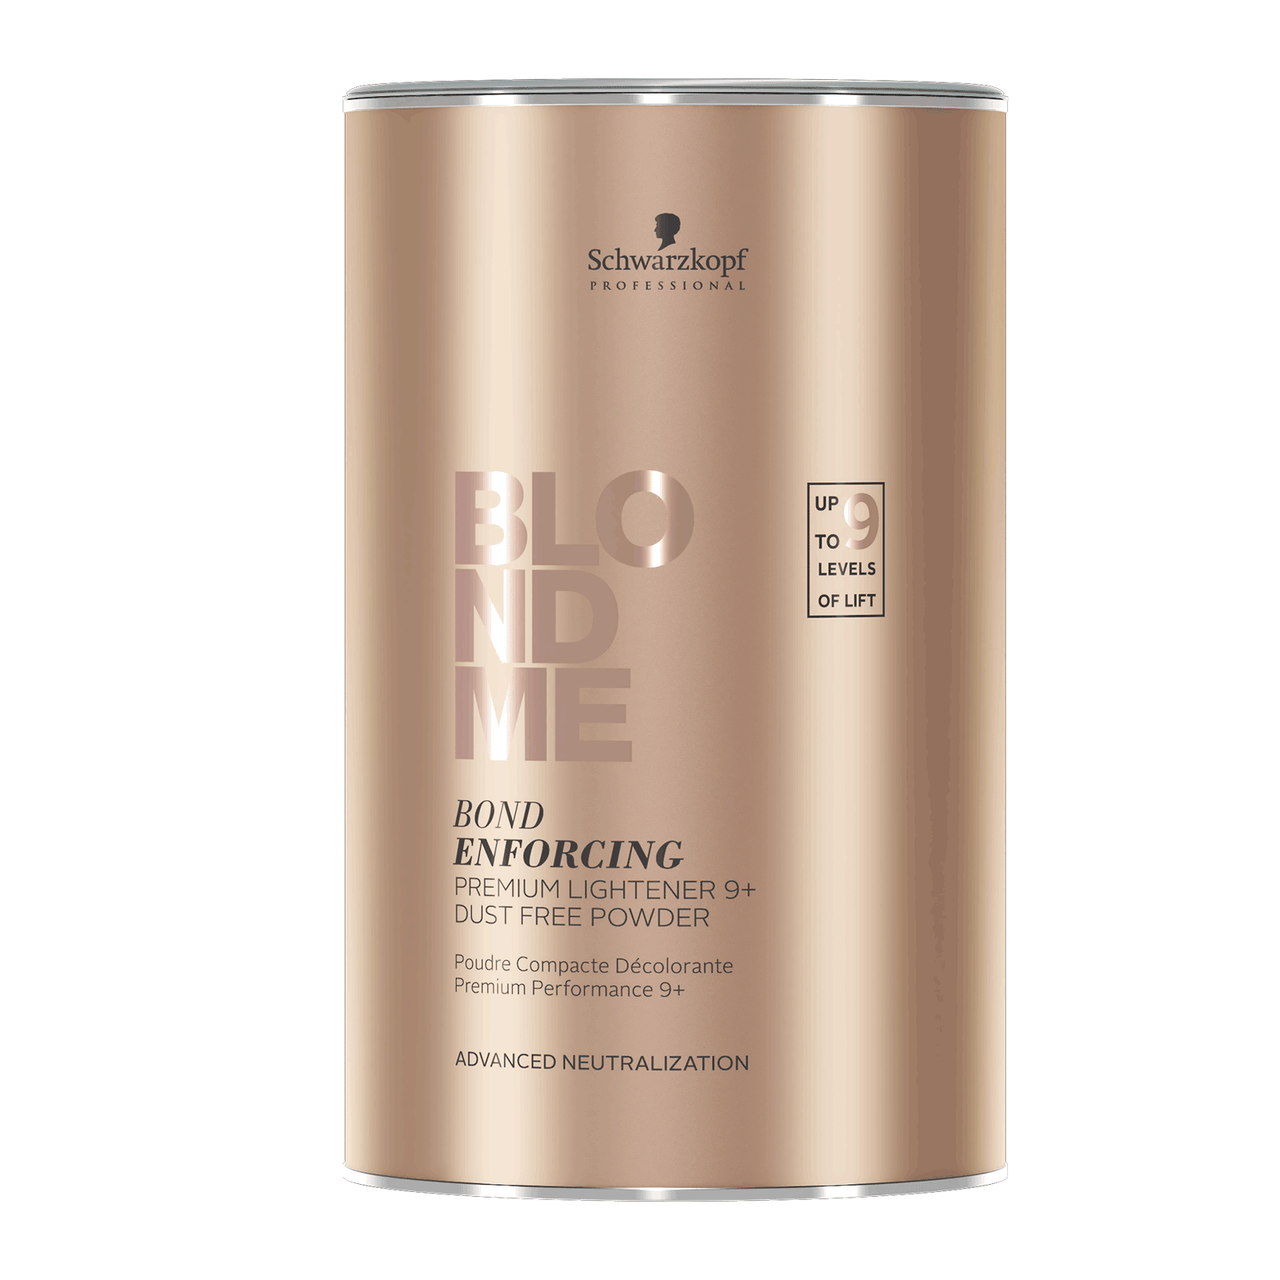 Schwarzkopf BlondMe Premium Lightener 9+ Powder